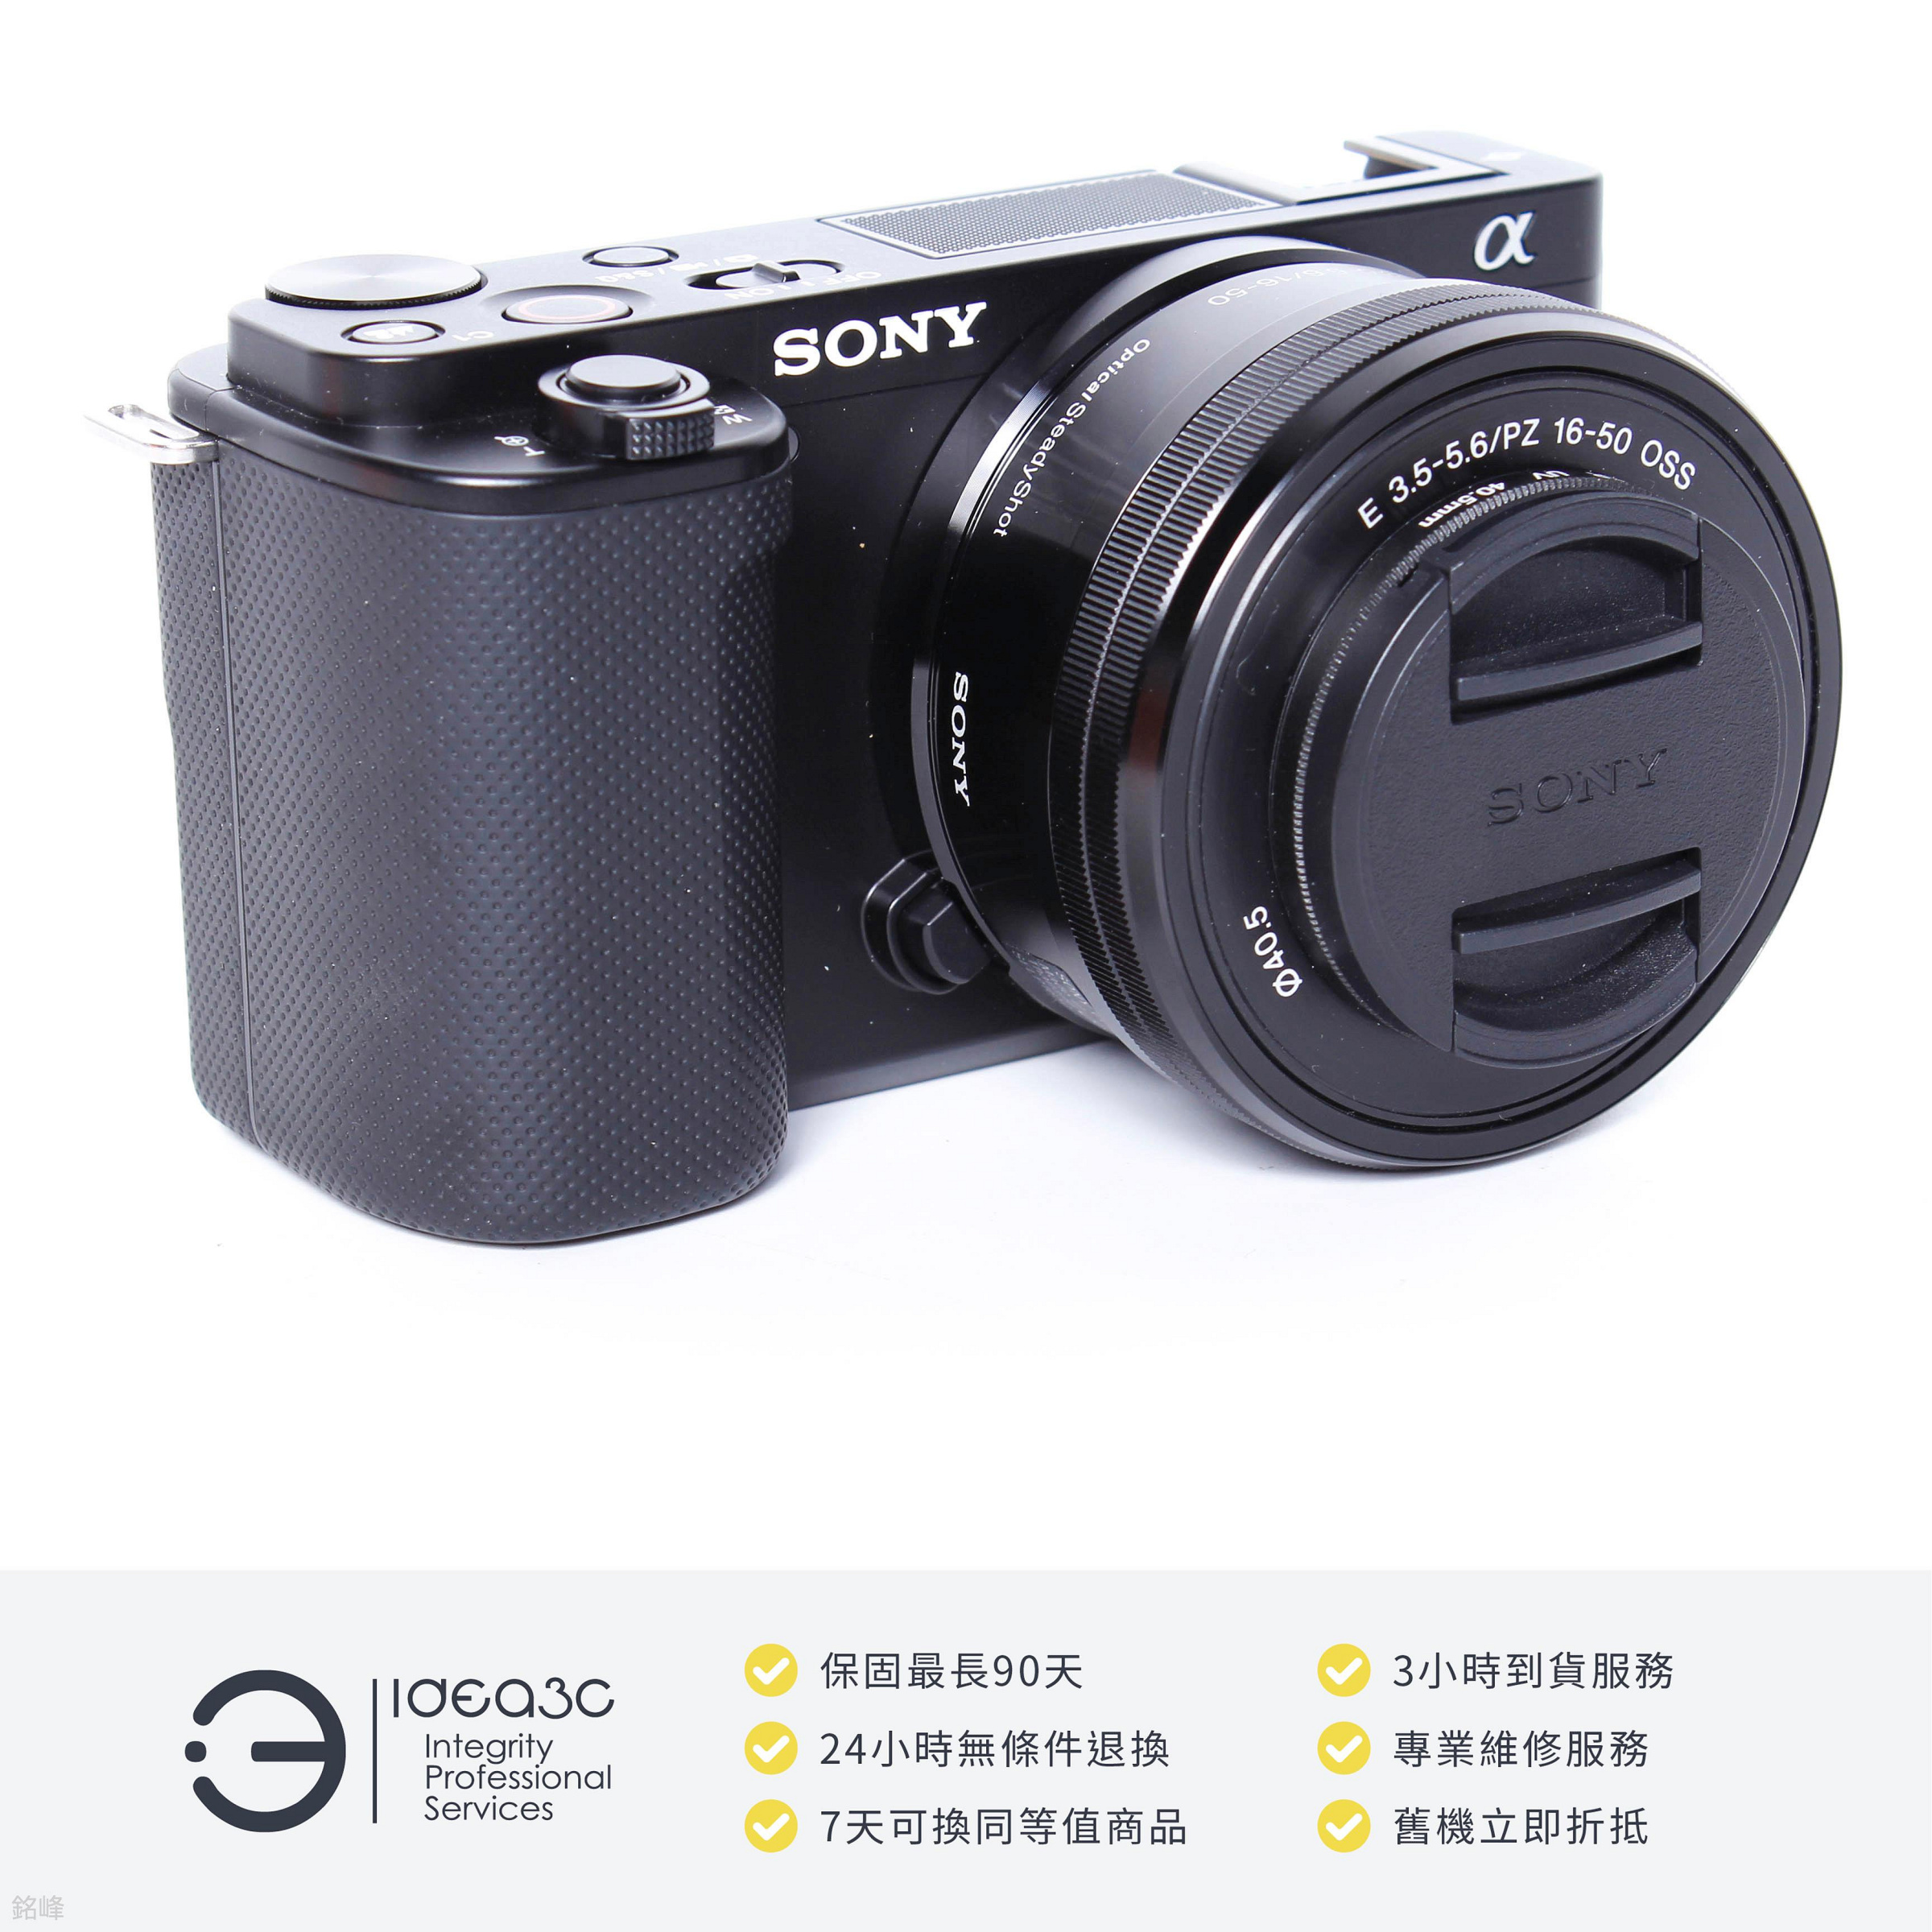 「點子3C」Sony Alpha ZV-E10 + Sony E 16-50mm F3.5-5.6 OSS 平輸貨【店保3個月】 DN073